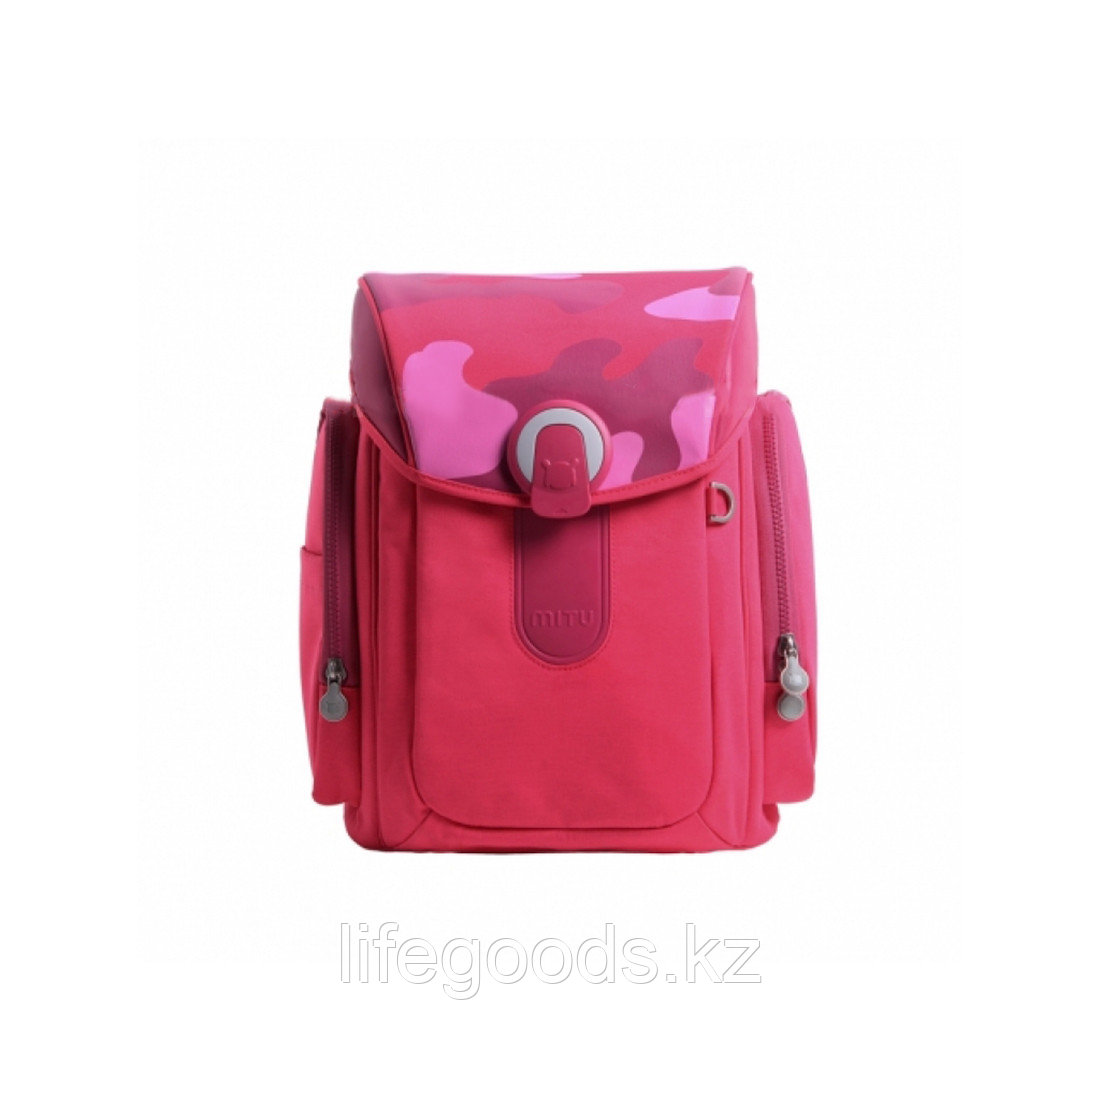 Детский рюкзак Xiaomi Mitu Style Розовый